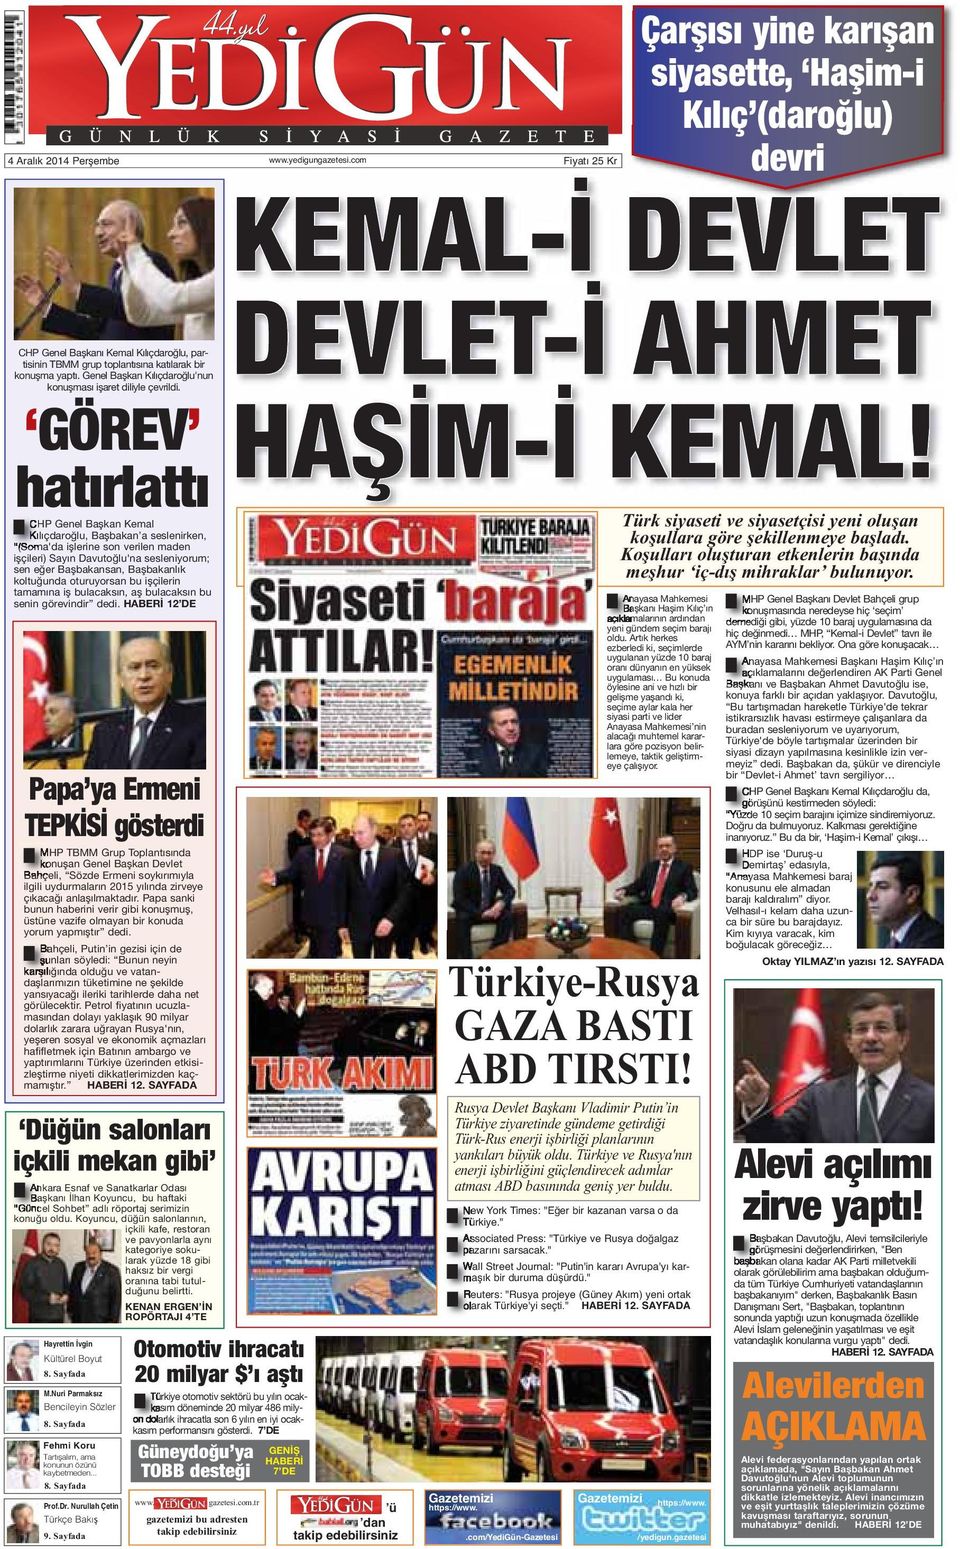 GÖREV hatırlattı CHP Genel Başkan Kemal Kılıçdaroğlu, Başbakan a seslenirken, (Soma'da işlerine son verilen maden işçileri) Sayın Davutoğlu'na sesleniyorum; sen eğer Başbakansan, Başbakanlık